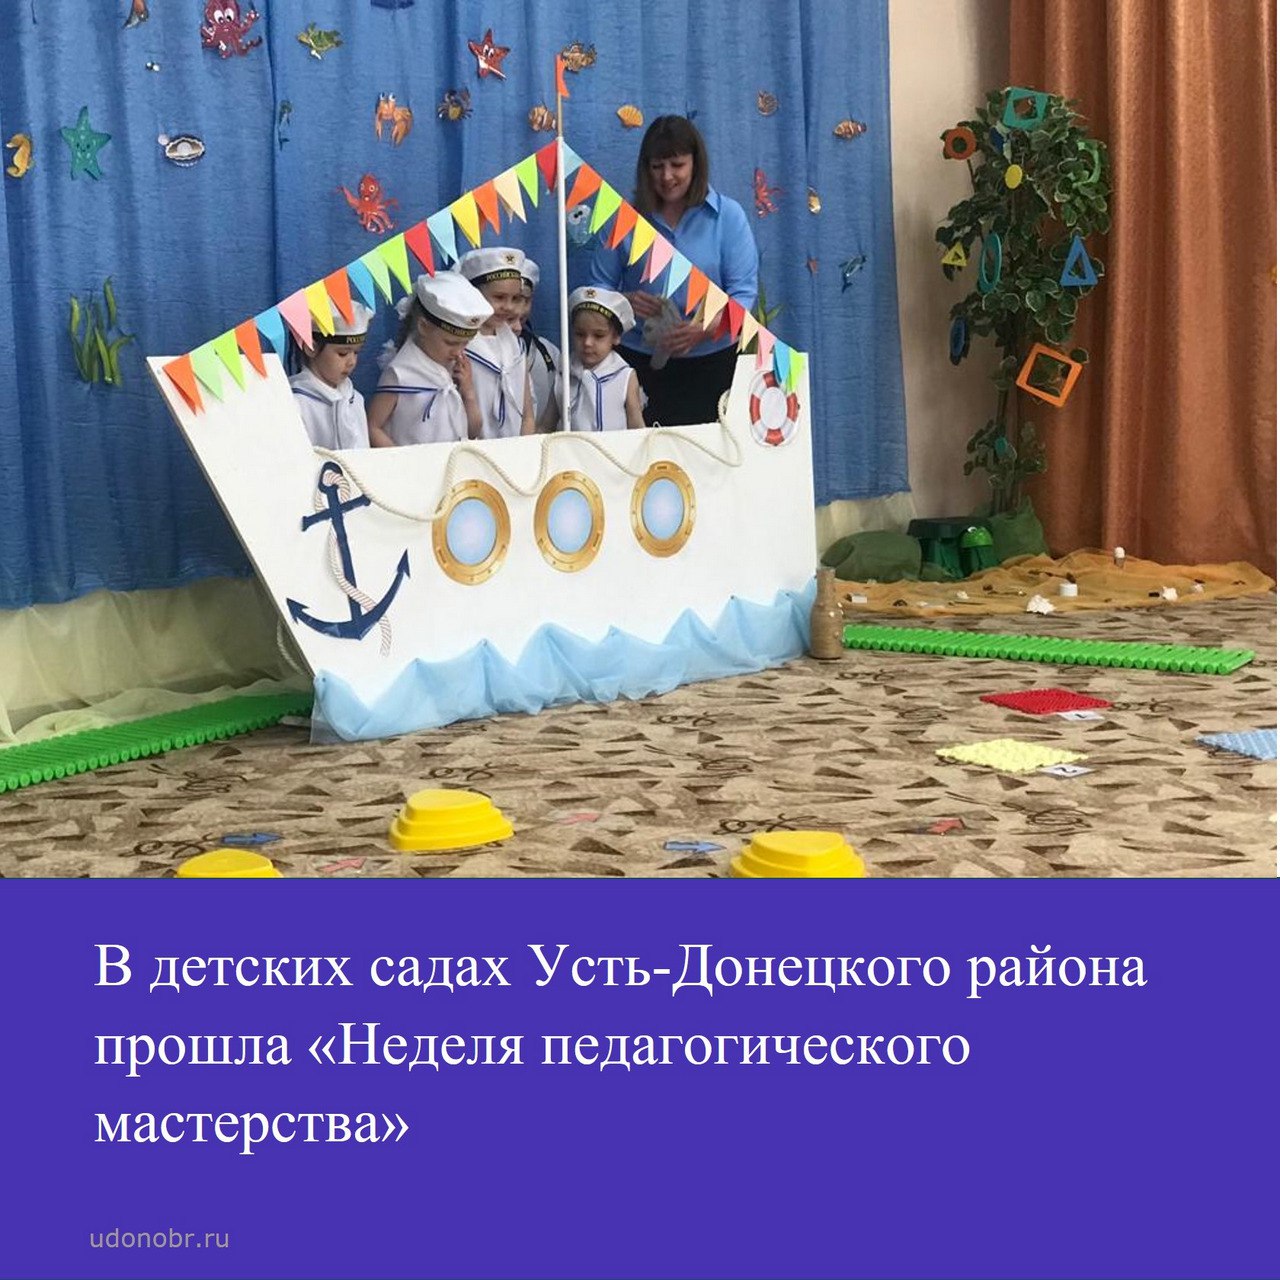 В детских садах Усть-Донецкого района прошла «Неделя педагогического мастерства»